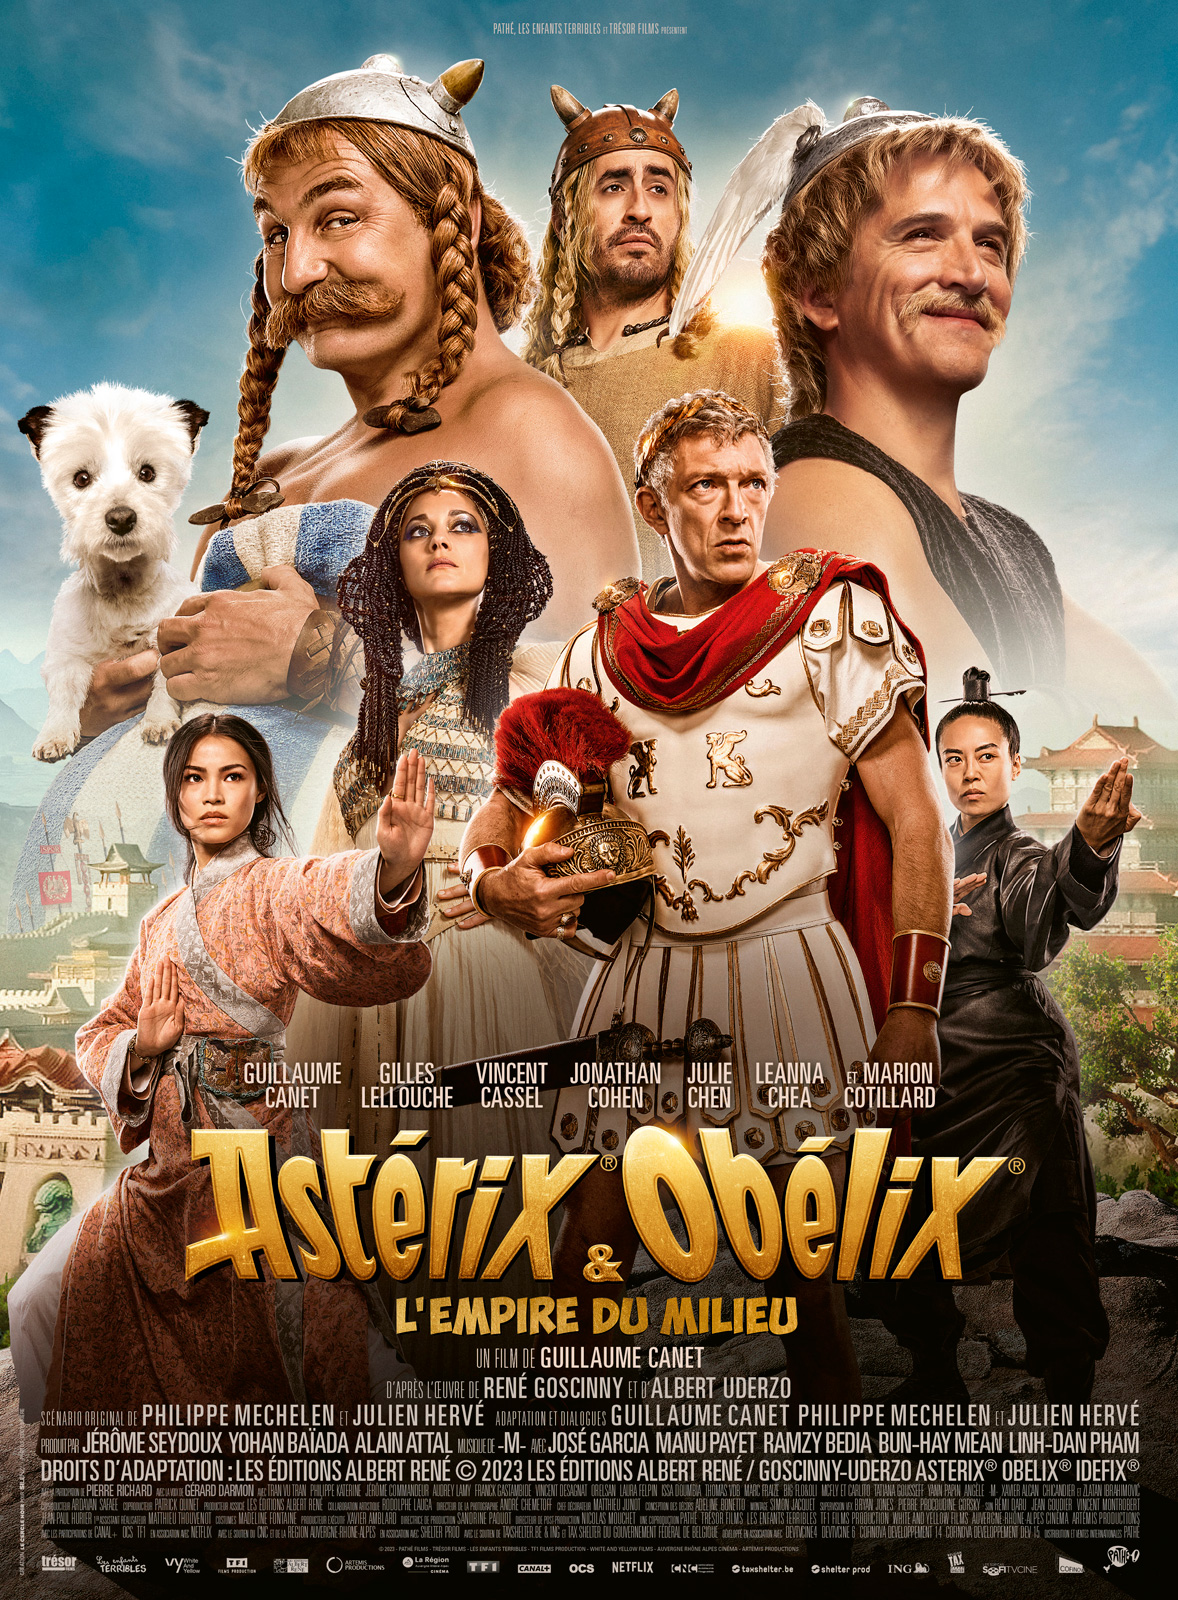 Astérix et Obélix : L'Empire du milieu - Cinéma Les Étoiles - Bruay la Buissière